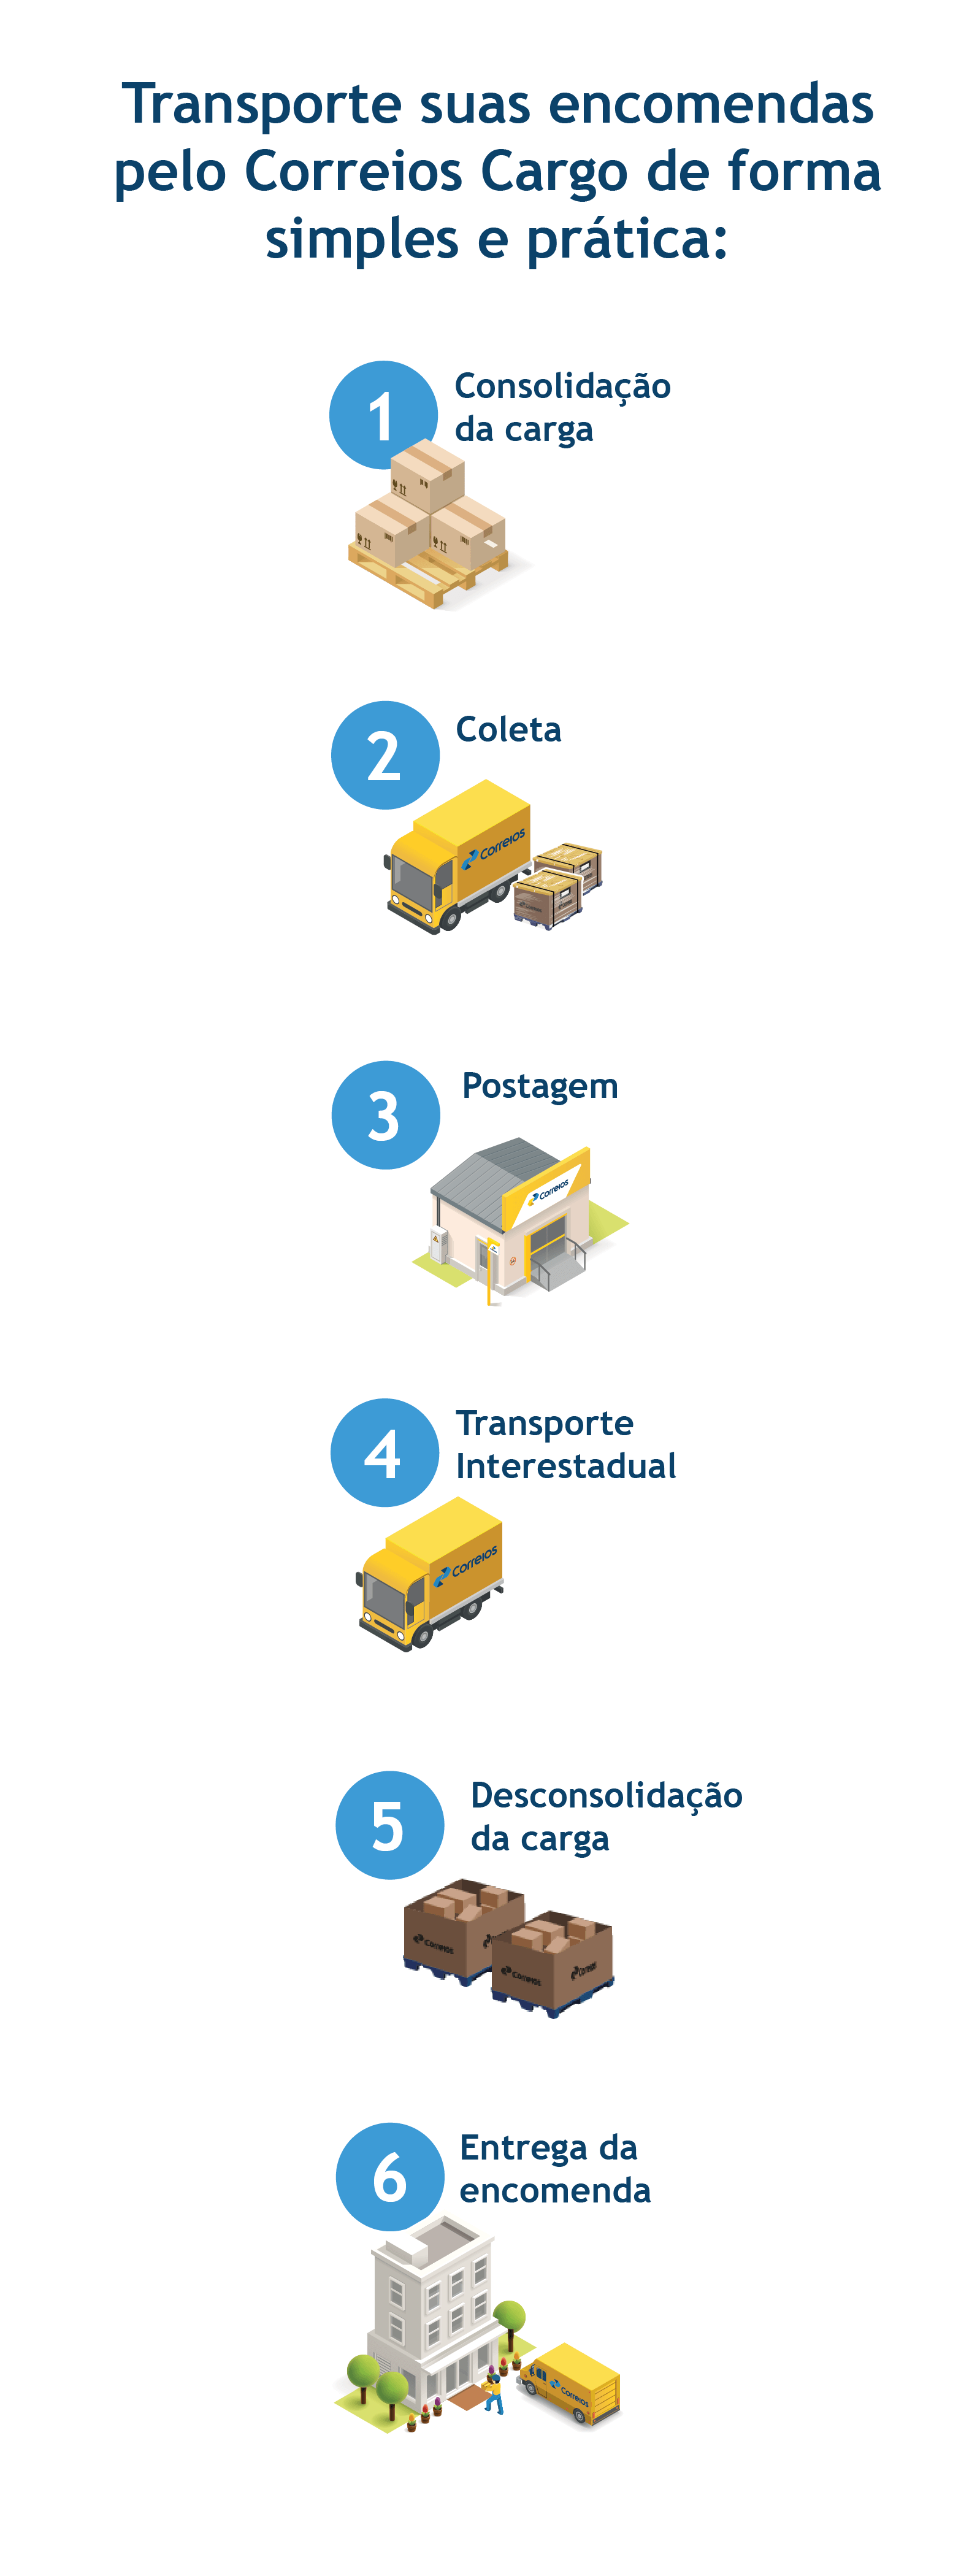 Imagem de fundo branco contendo as 6 etapas do serviço do Correios Cargo